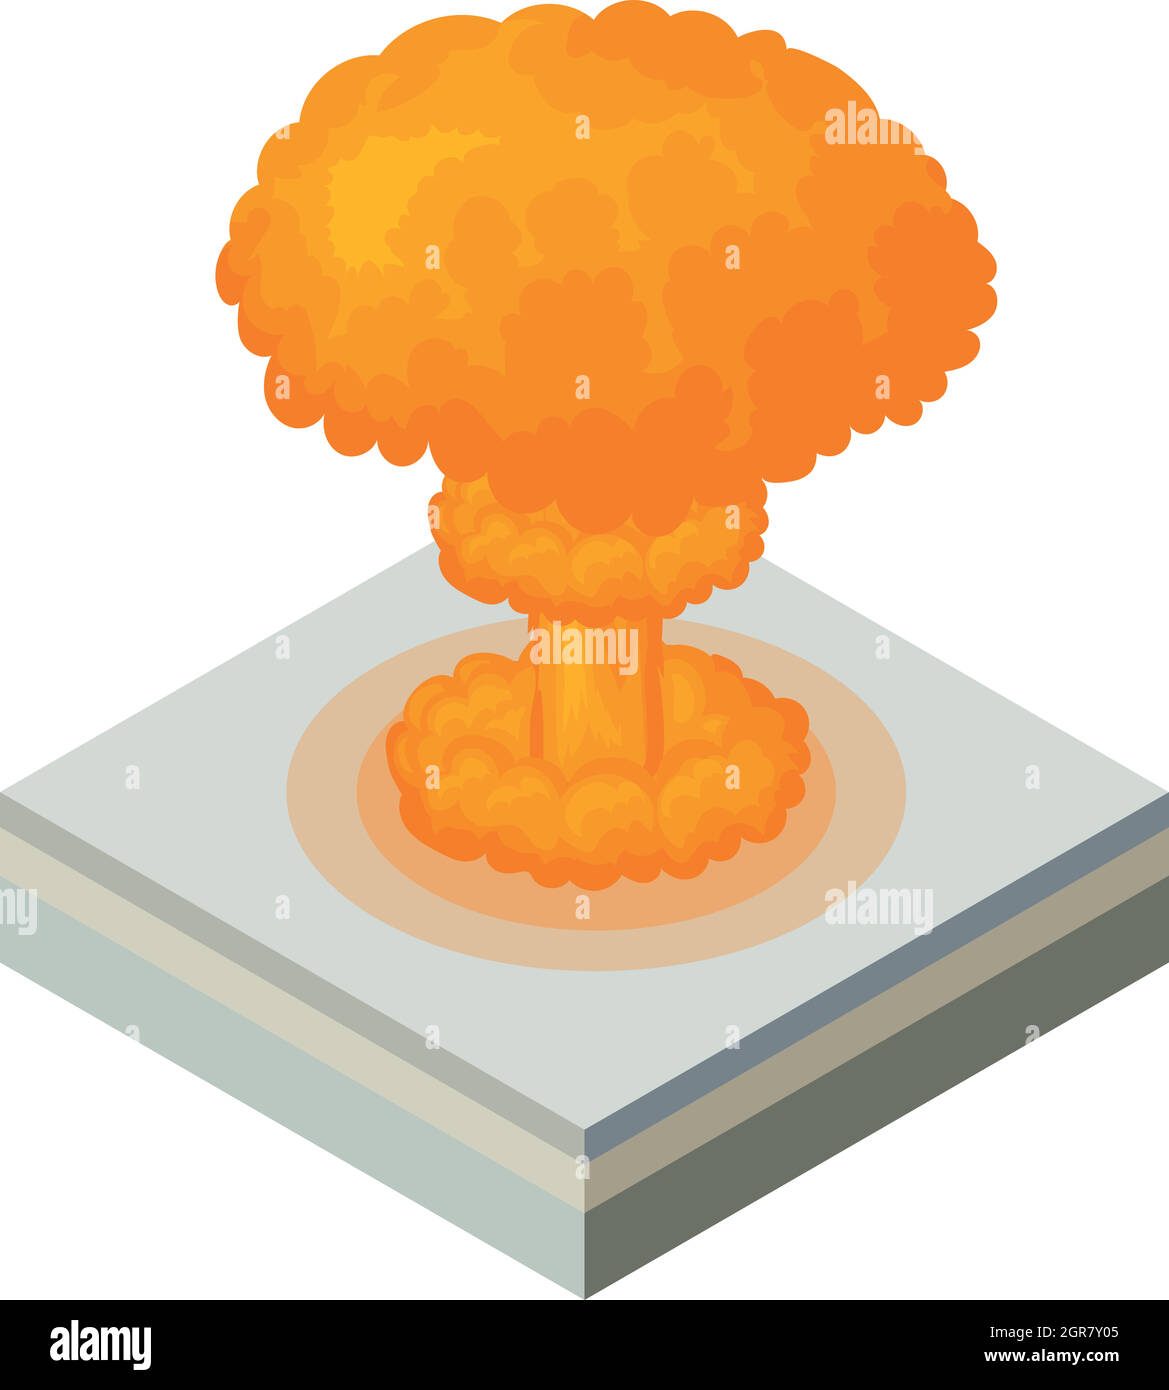 Esplosione nucleare, l'icona di stile cartoon Illustrazione Vettoriale